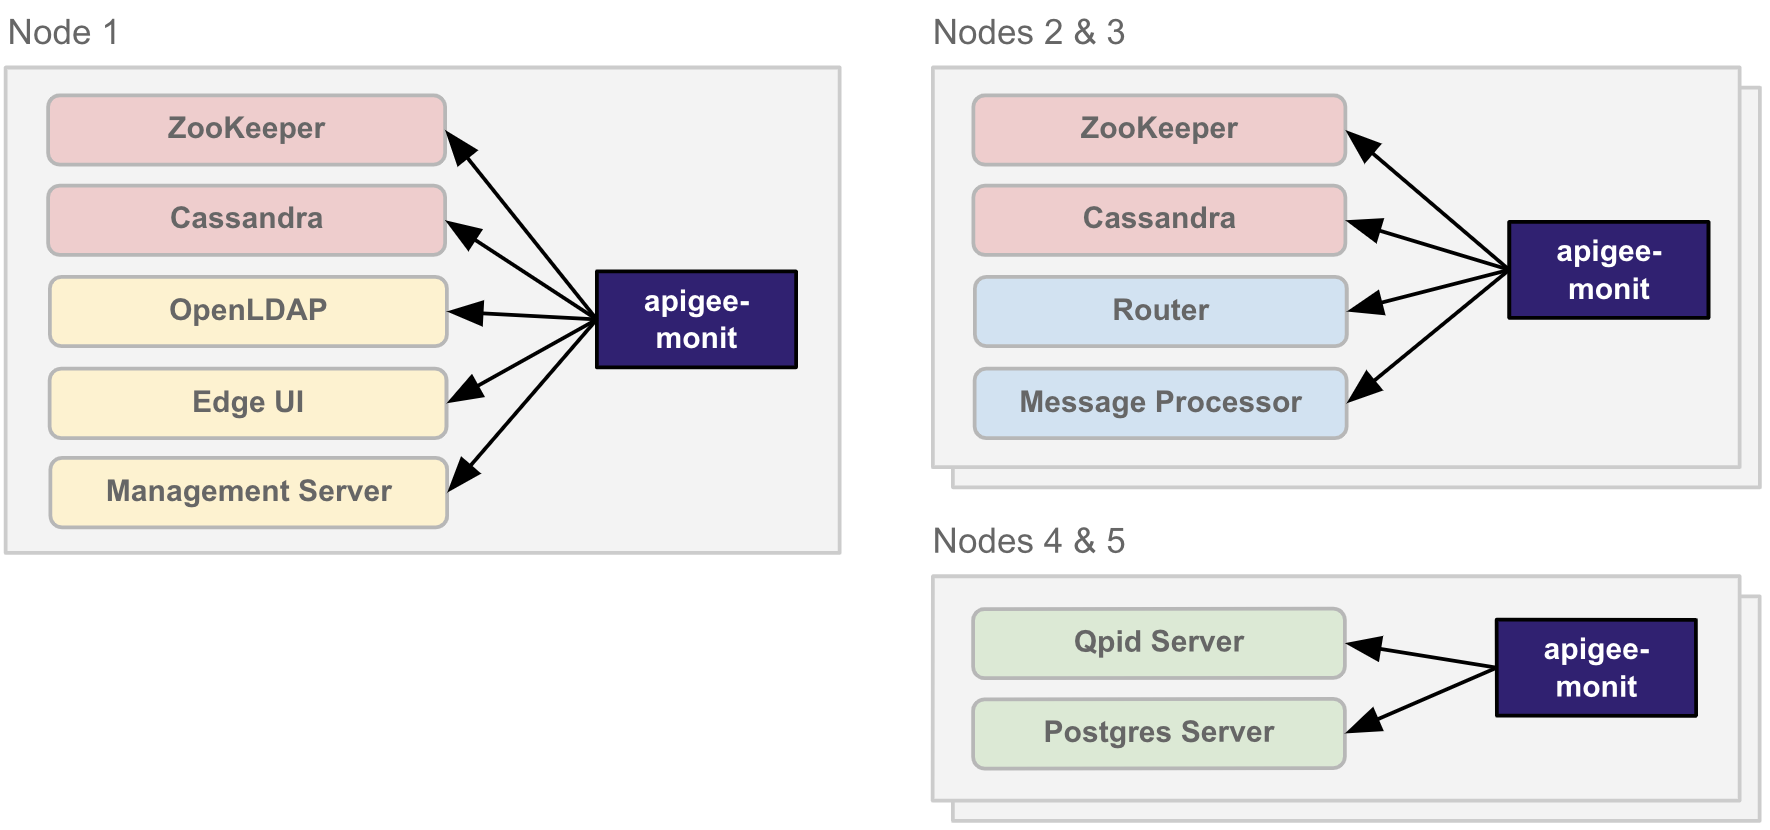 Arsitektur
  Apigee monit dalam cluster 5 node